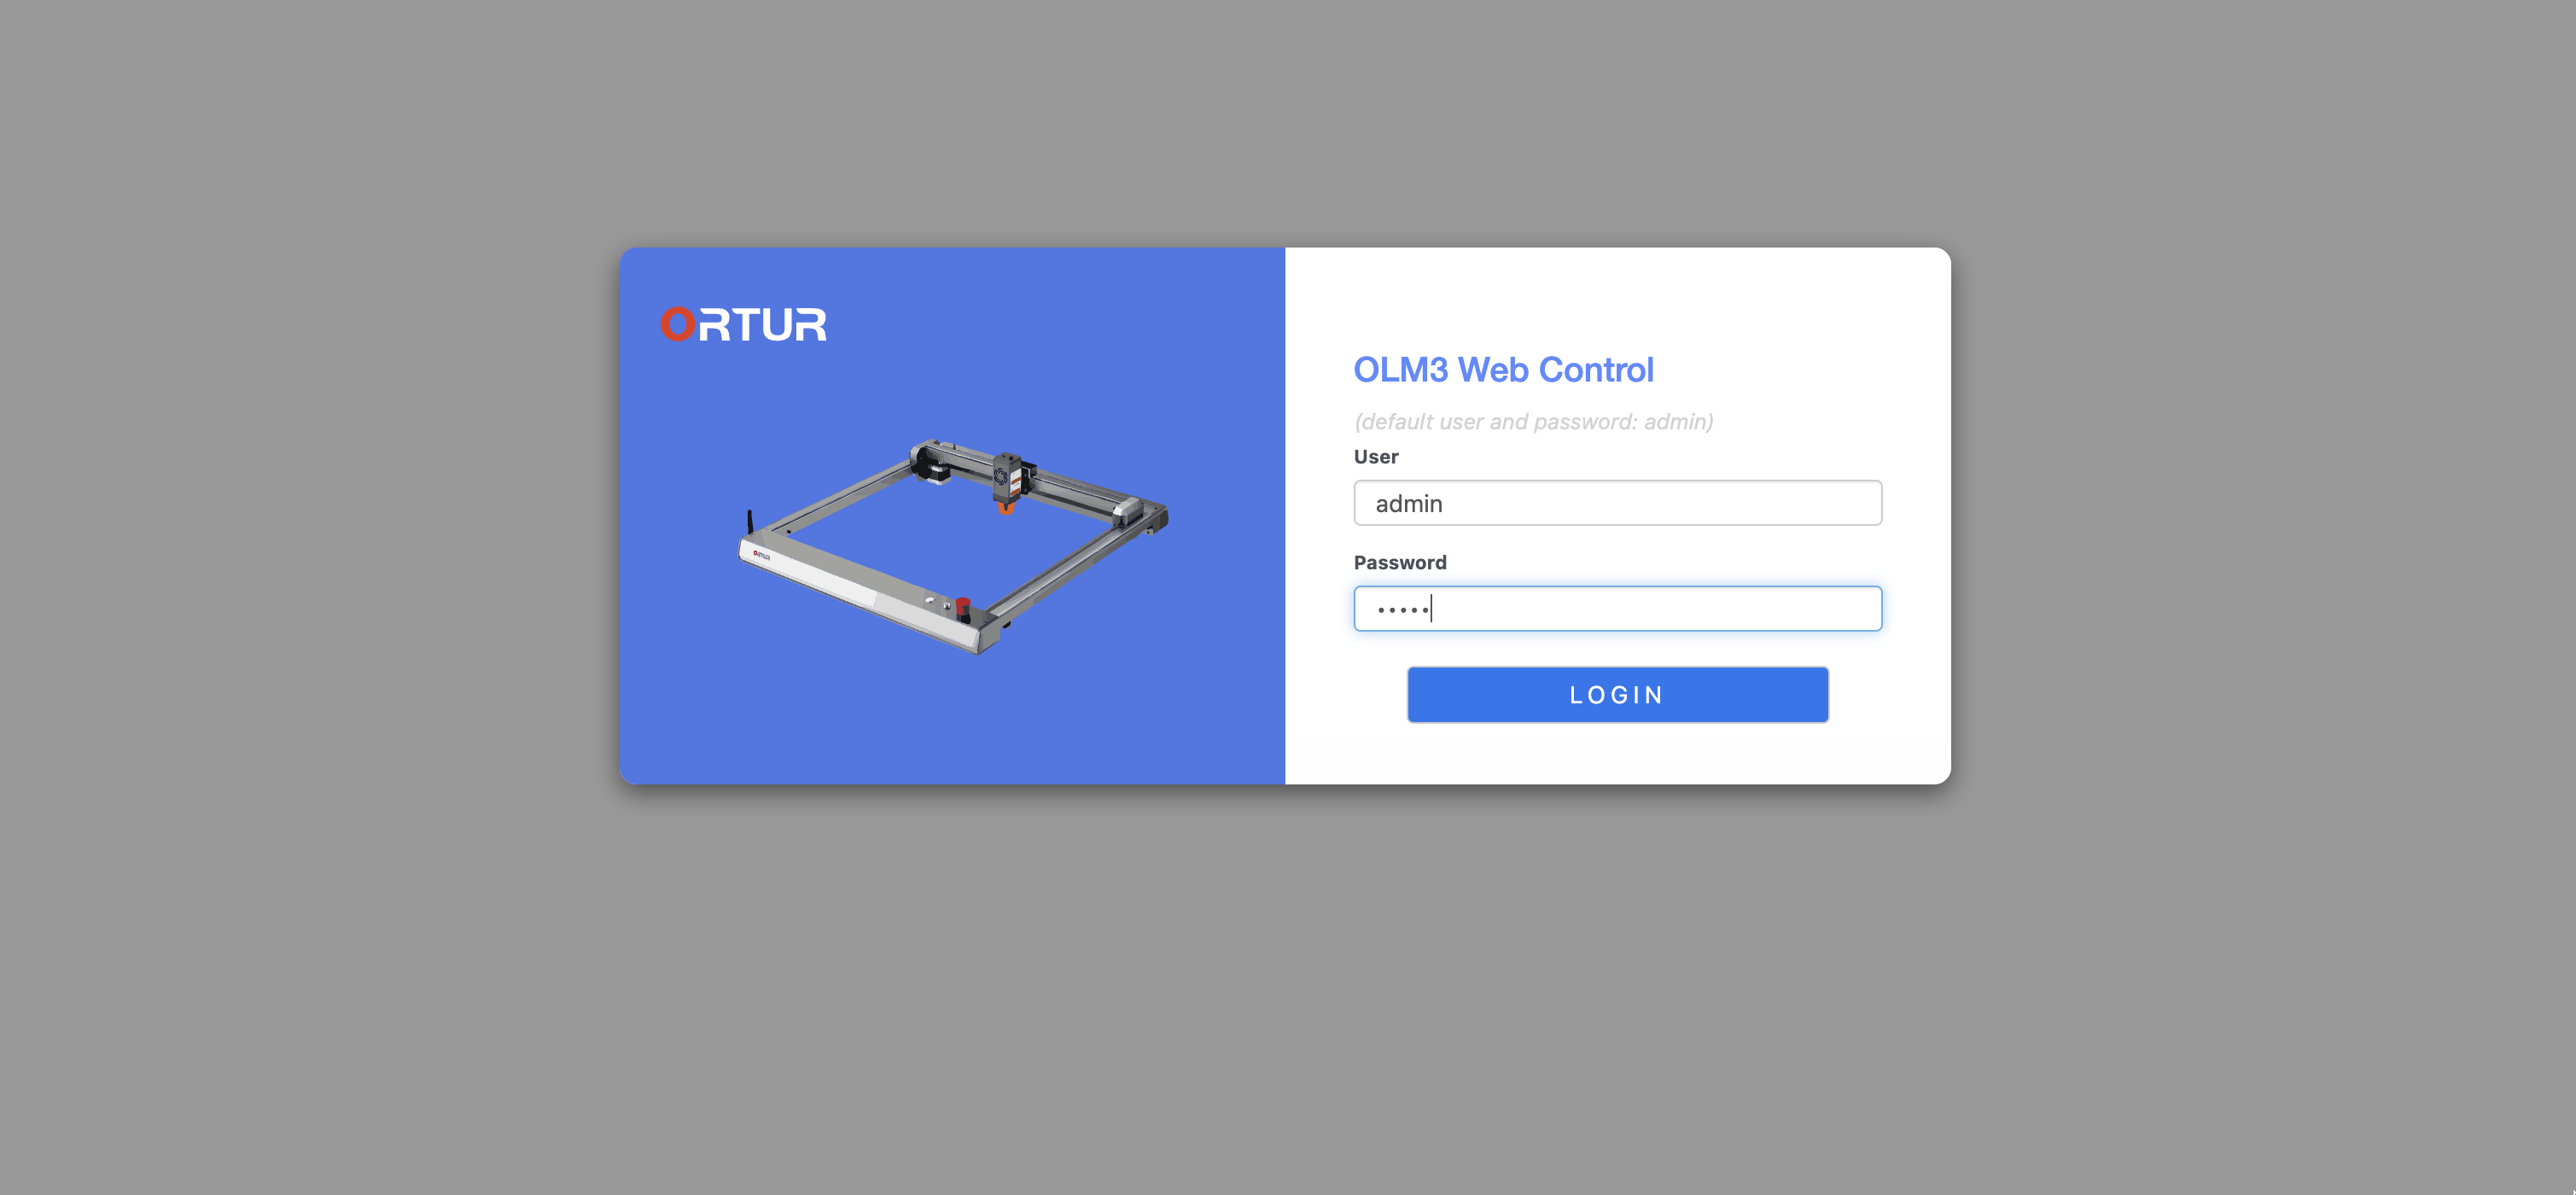 Ortur Laser Master 3 Web Interface13 | ORTUR Laser Master 3 Preview: Premium Build Quality at Premium Cost